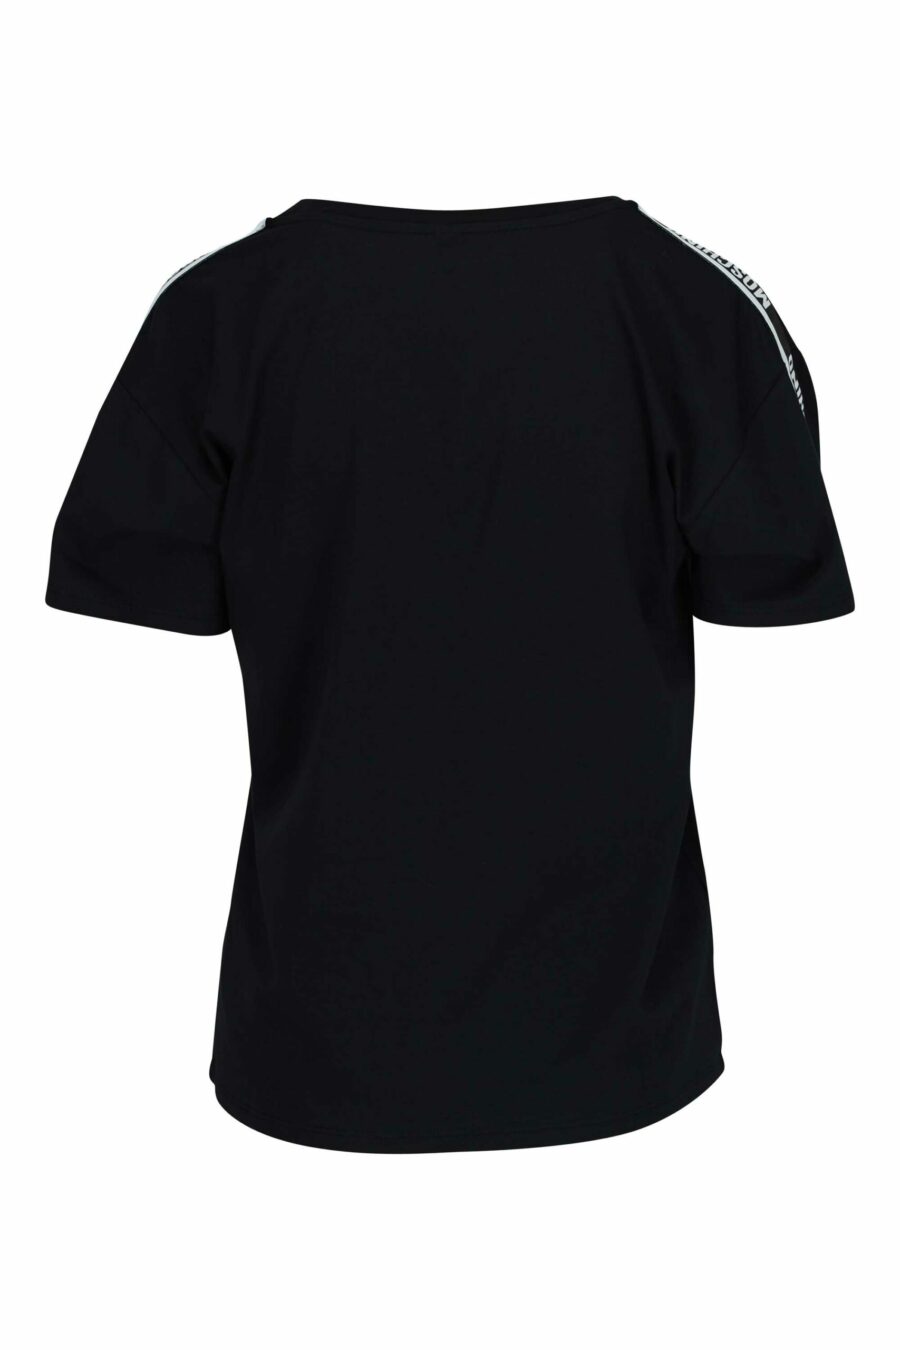 Schwarzes T-Shirt mit weißem Logo auf der Schulterpartie - 667113695549 1 skaliert